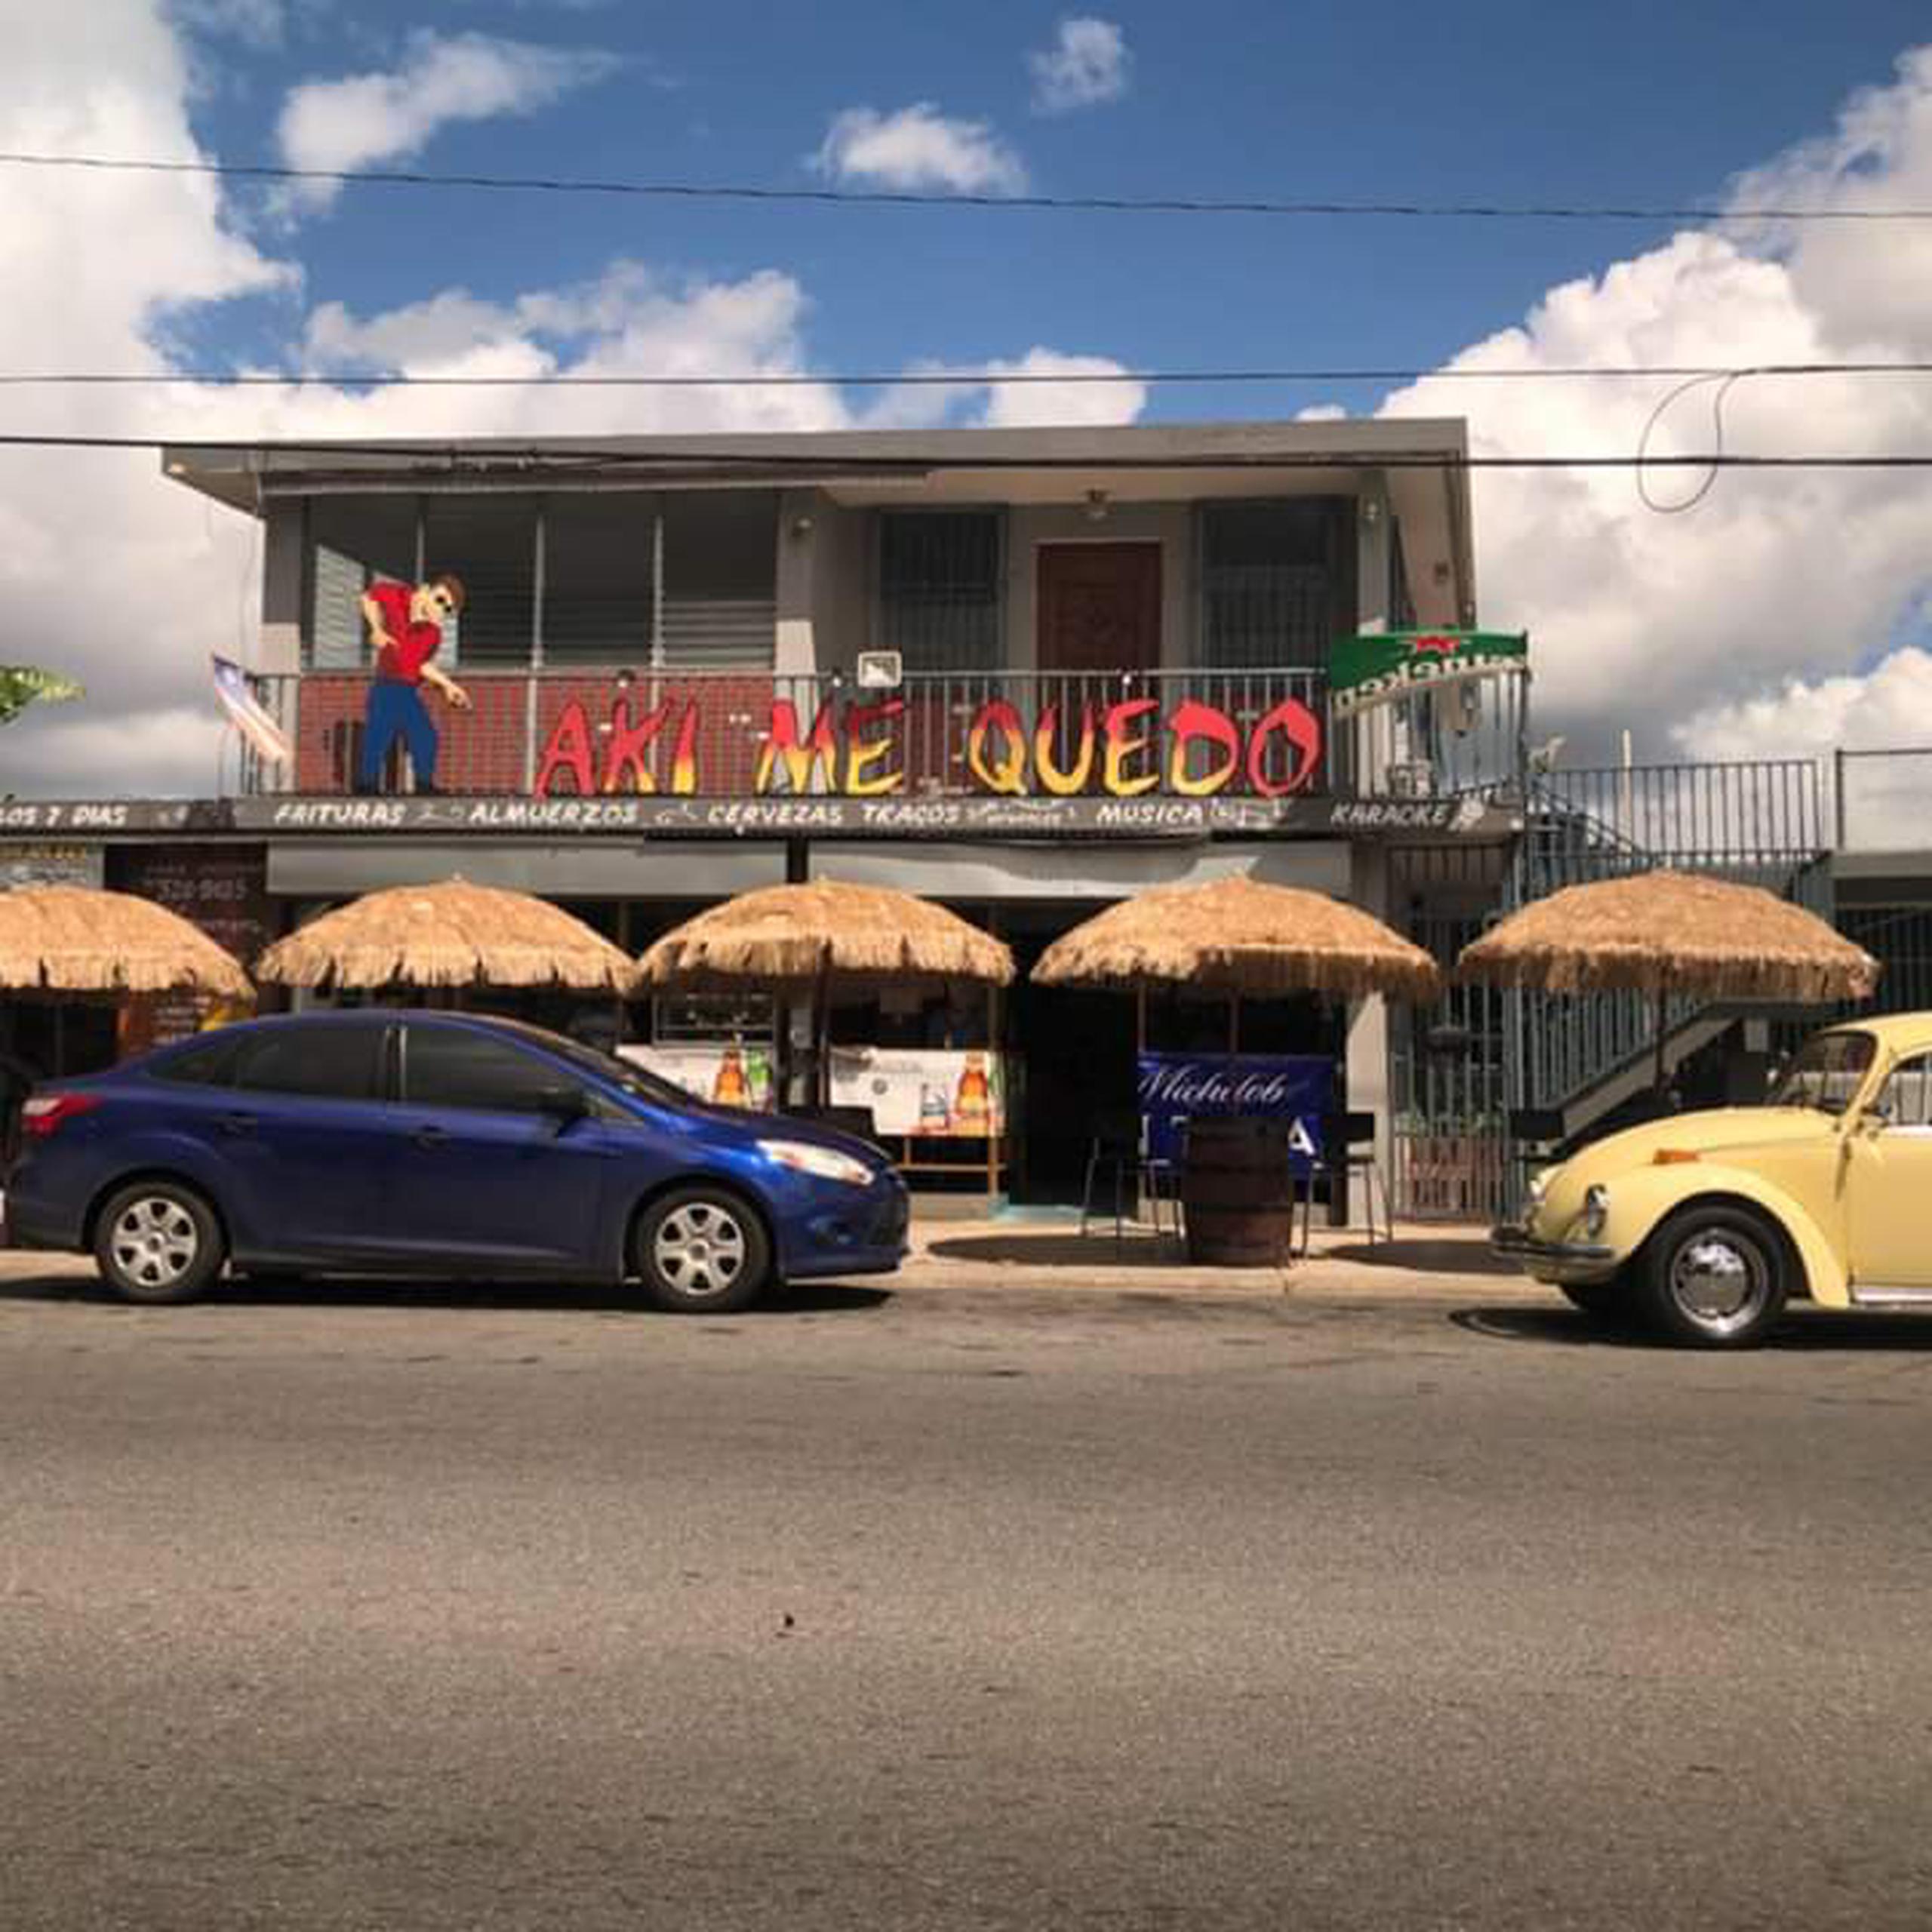 El negocio "Aki me Quedo" fue cerrado por personal de la Policía Municipal y de ARPE en Bayamón por presuntamente violar la Orden Ejecutiva que establece medidas para evitar contagios con el coronavirus y operar con un permiso vencido.